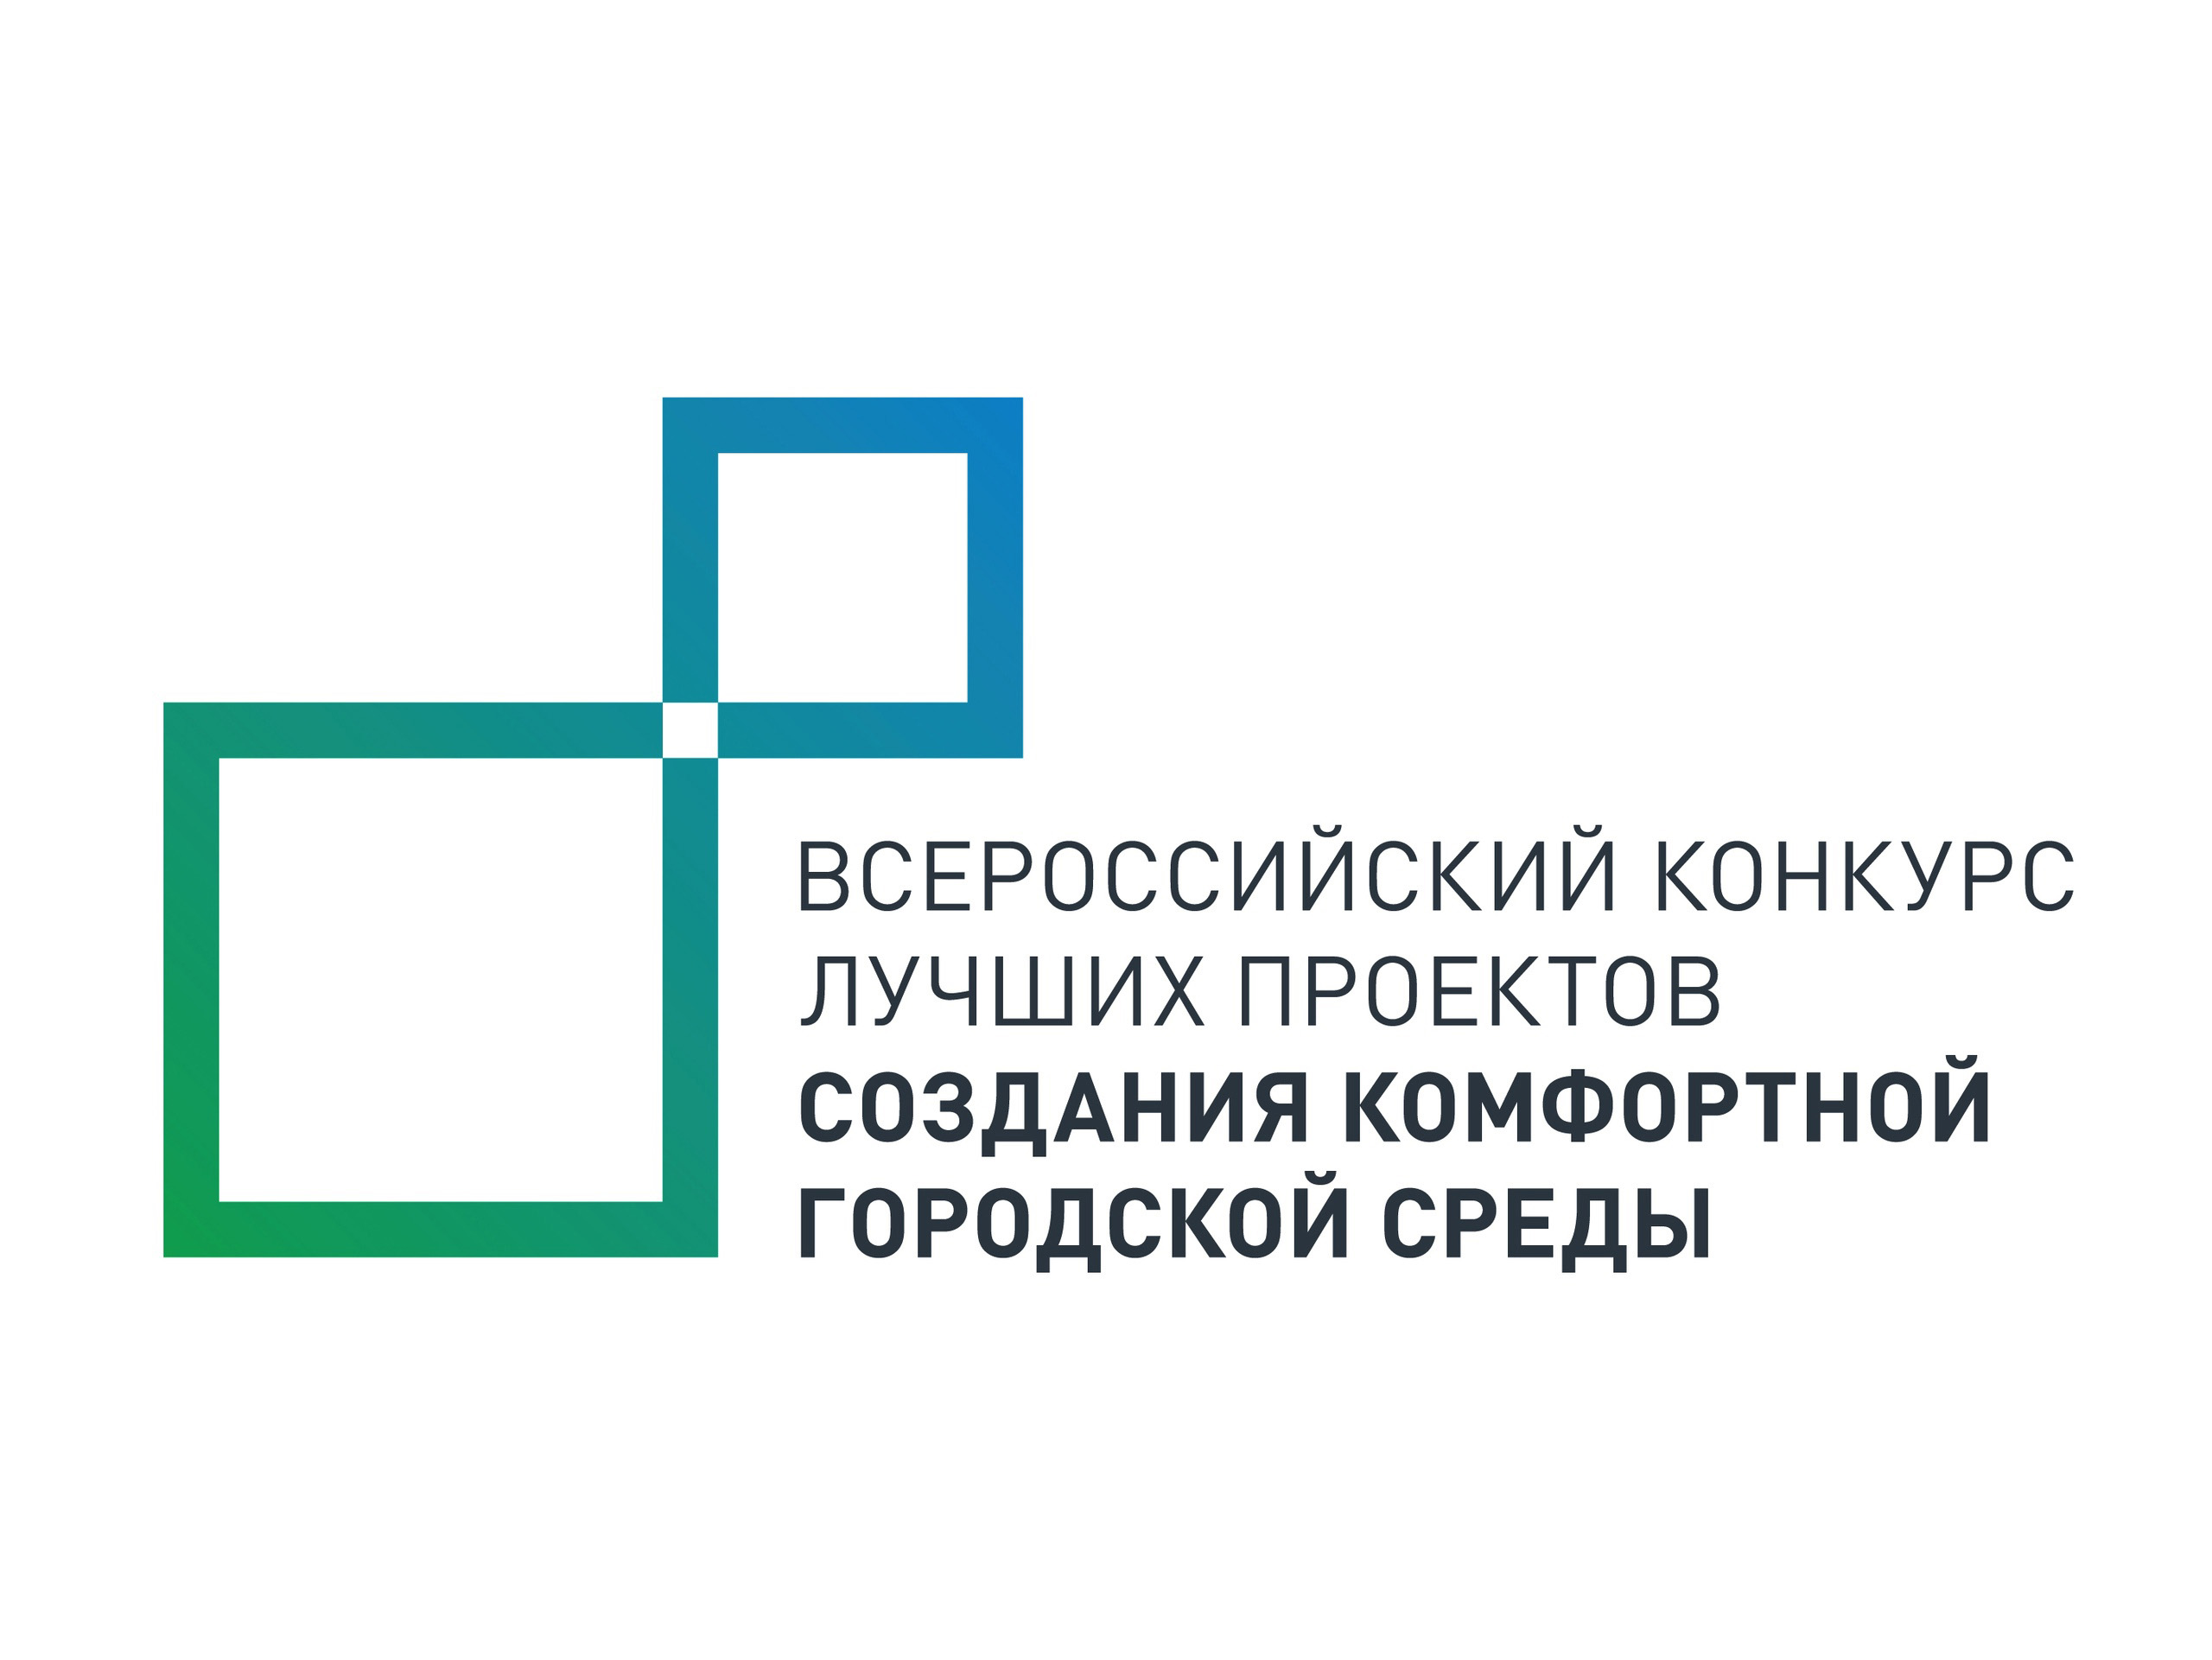 Грязовецкий округ примет участие во Всероссийском конкурсе лучших проектов создания комфортной городской среды.